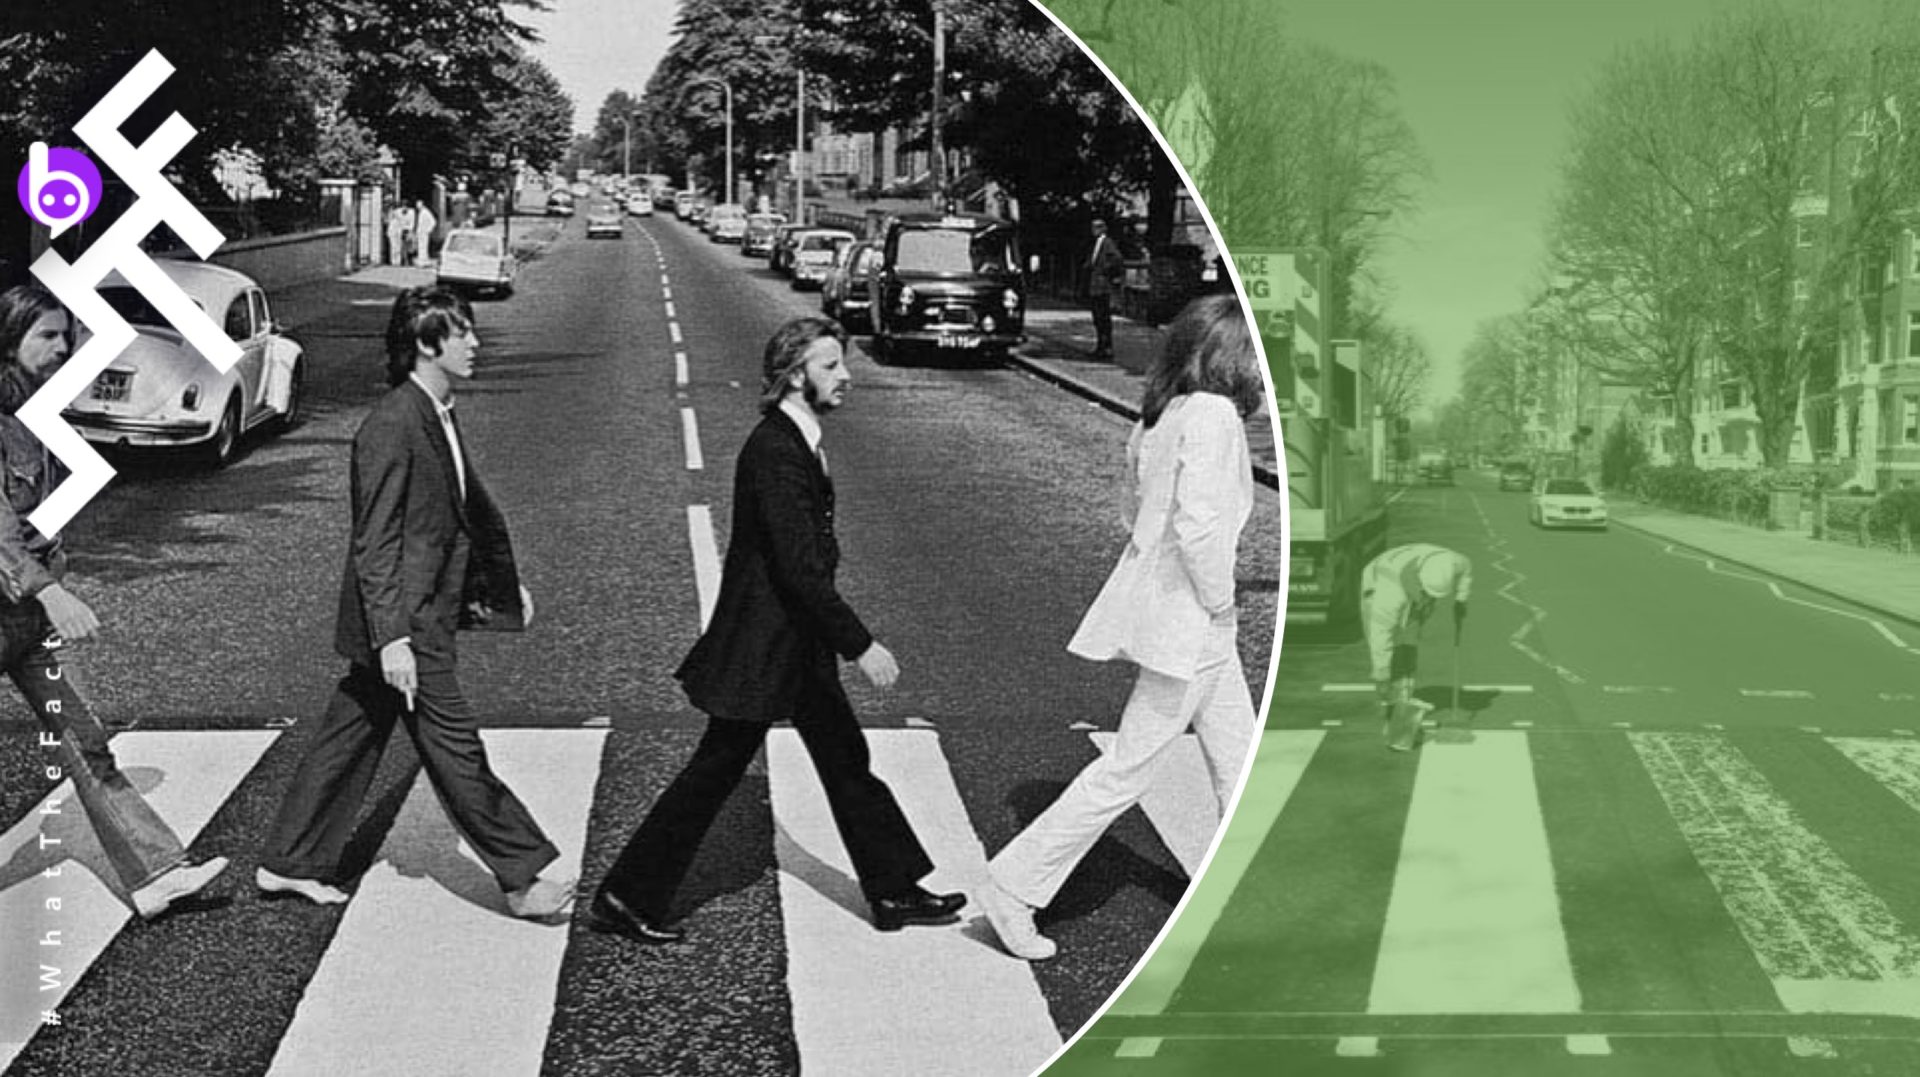 ทางม้าลายบนถนน Abbey Road ได้ถูกทาสีใหม่ให้ไฉไลอีกครั้งเพราะ Covid-19